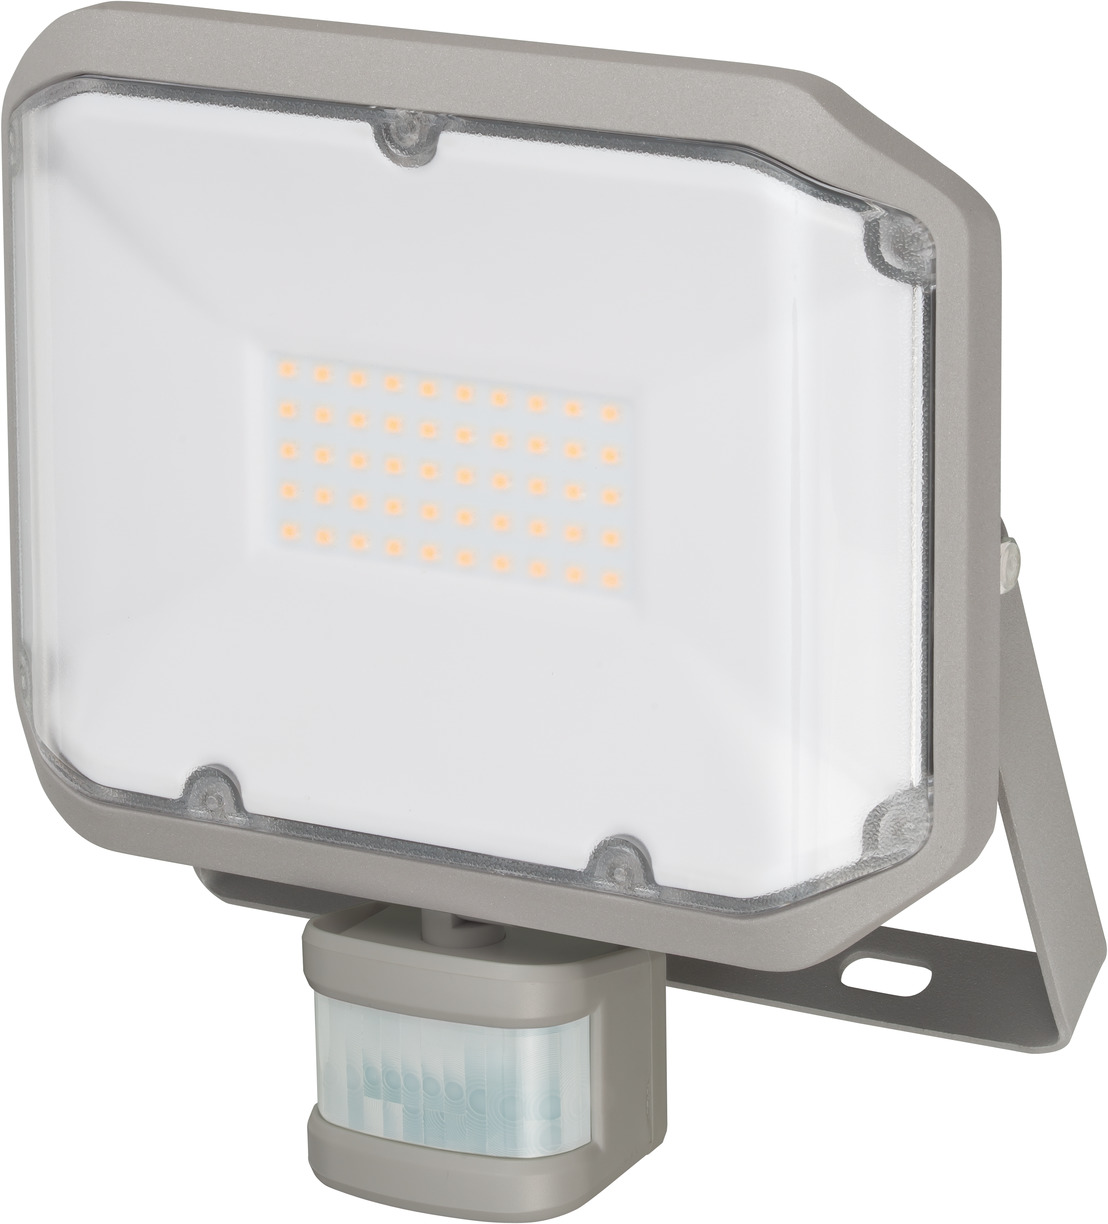 Projecteur LED AL 3050 P avec détecteur de mouvements infrarouge